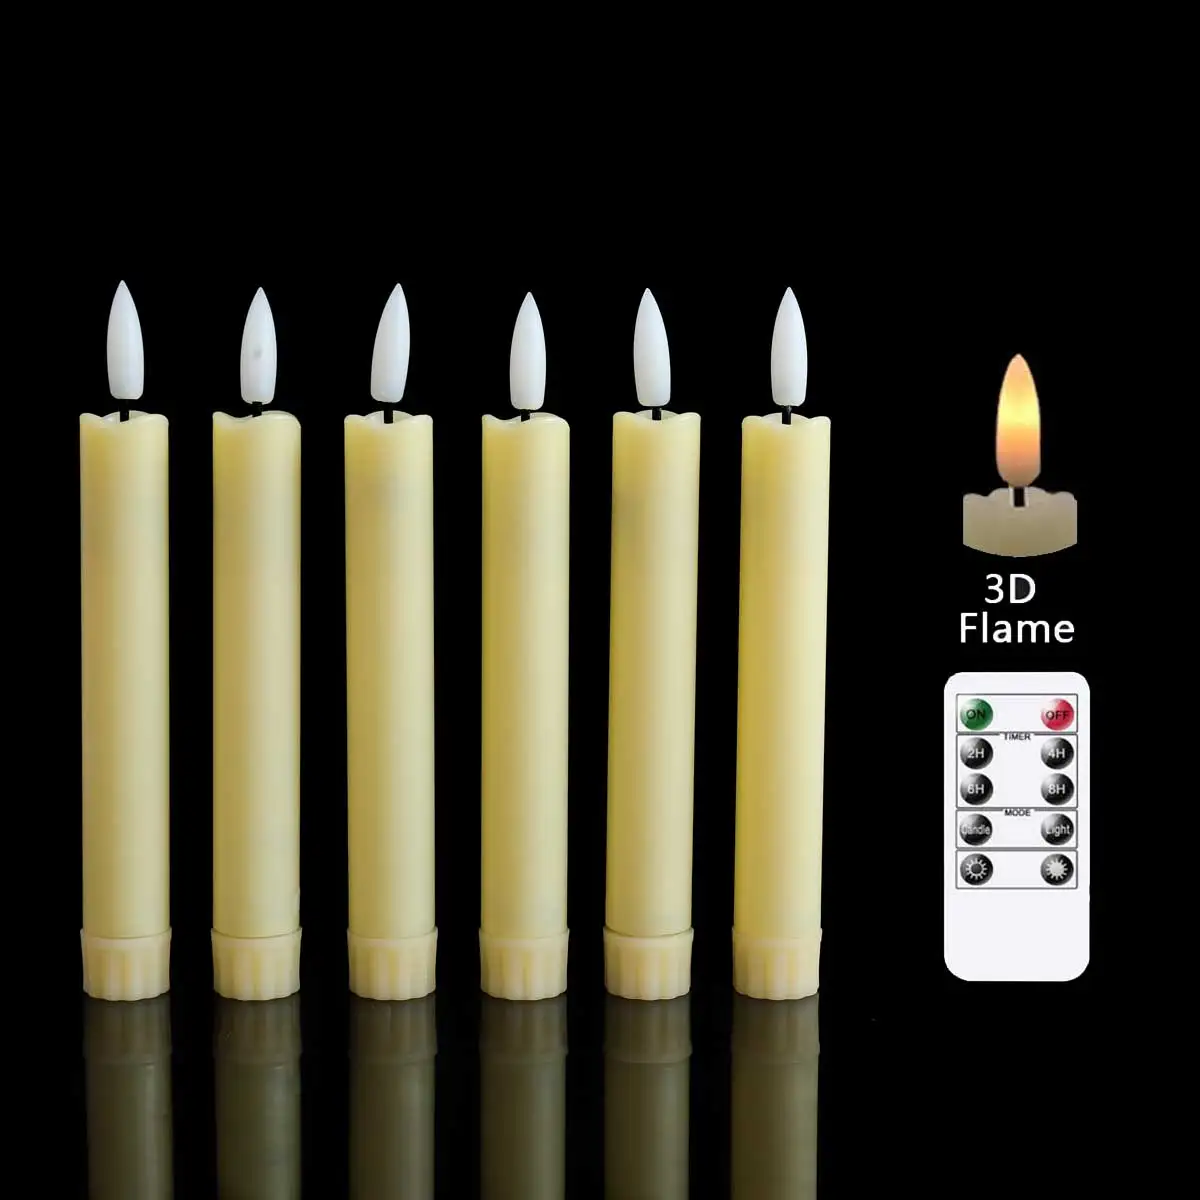 

Упаковка из 6 Бежевых/белых светодиодный светодиодных конусных декоративных свечей с дистанционным управлением, поддельные светодиодный светодиодные свечи на батарейках для быстрого месяца